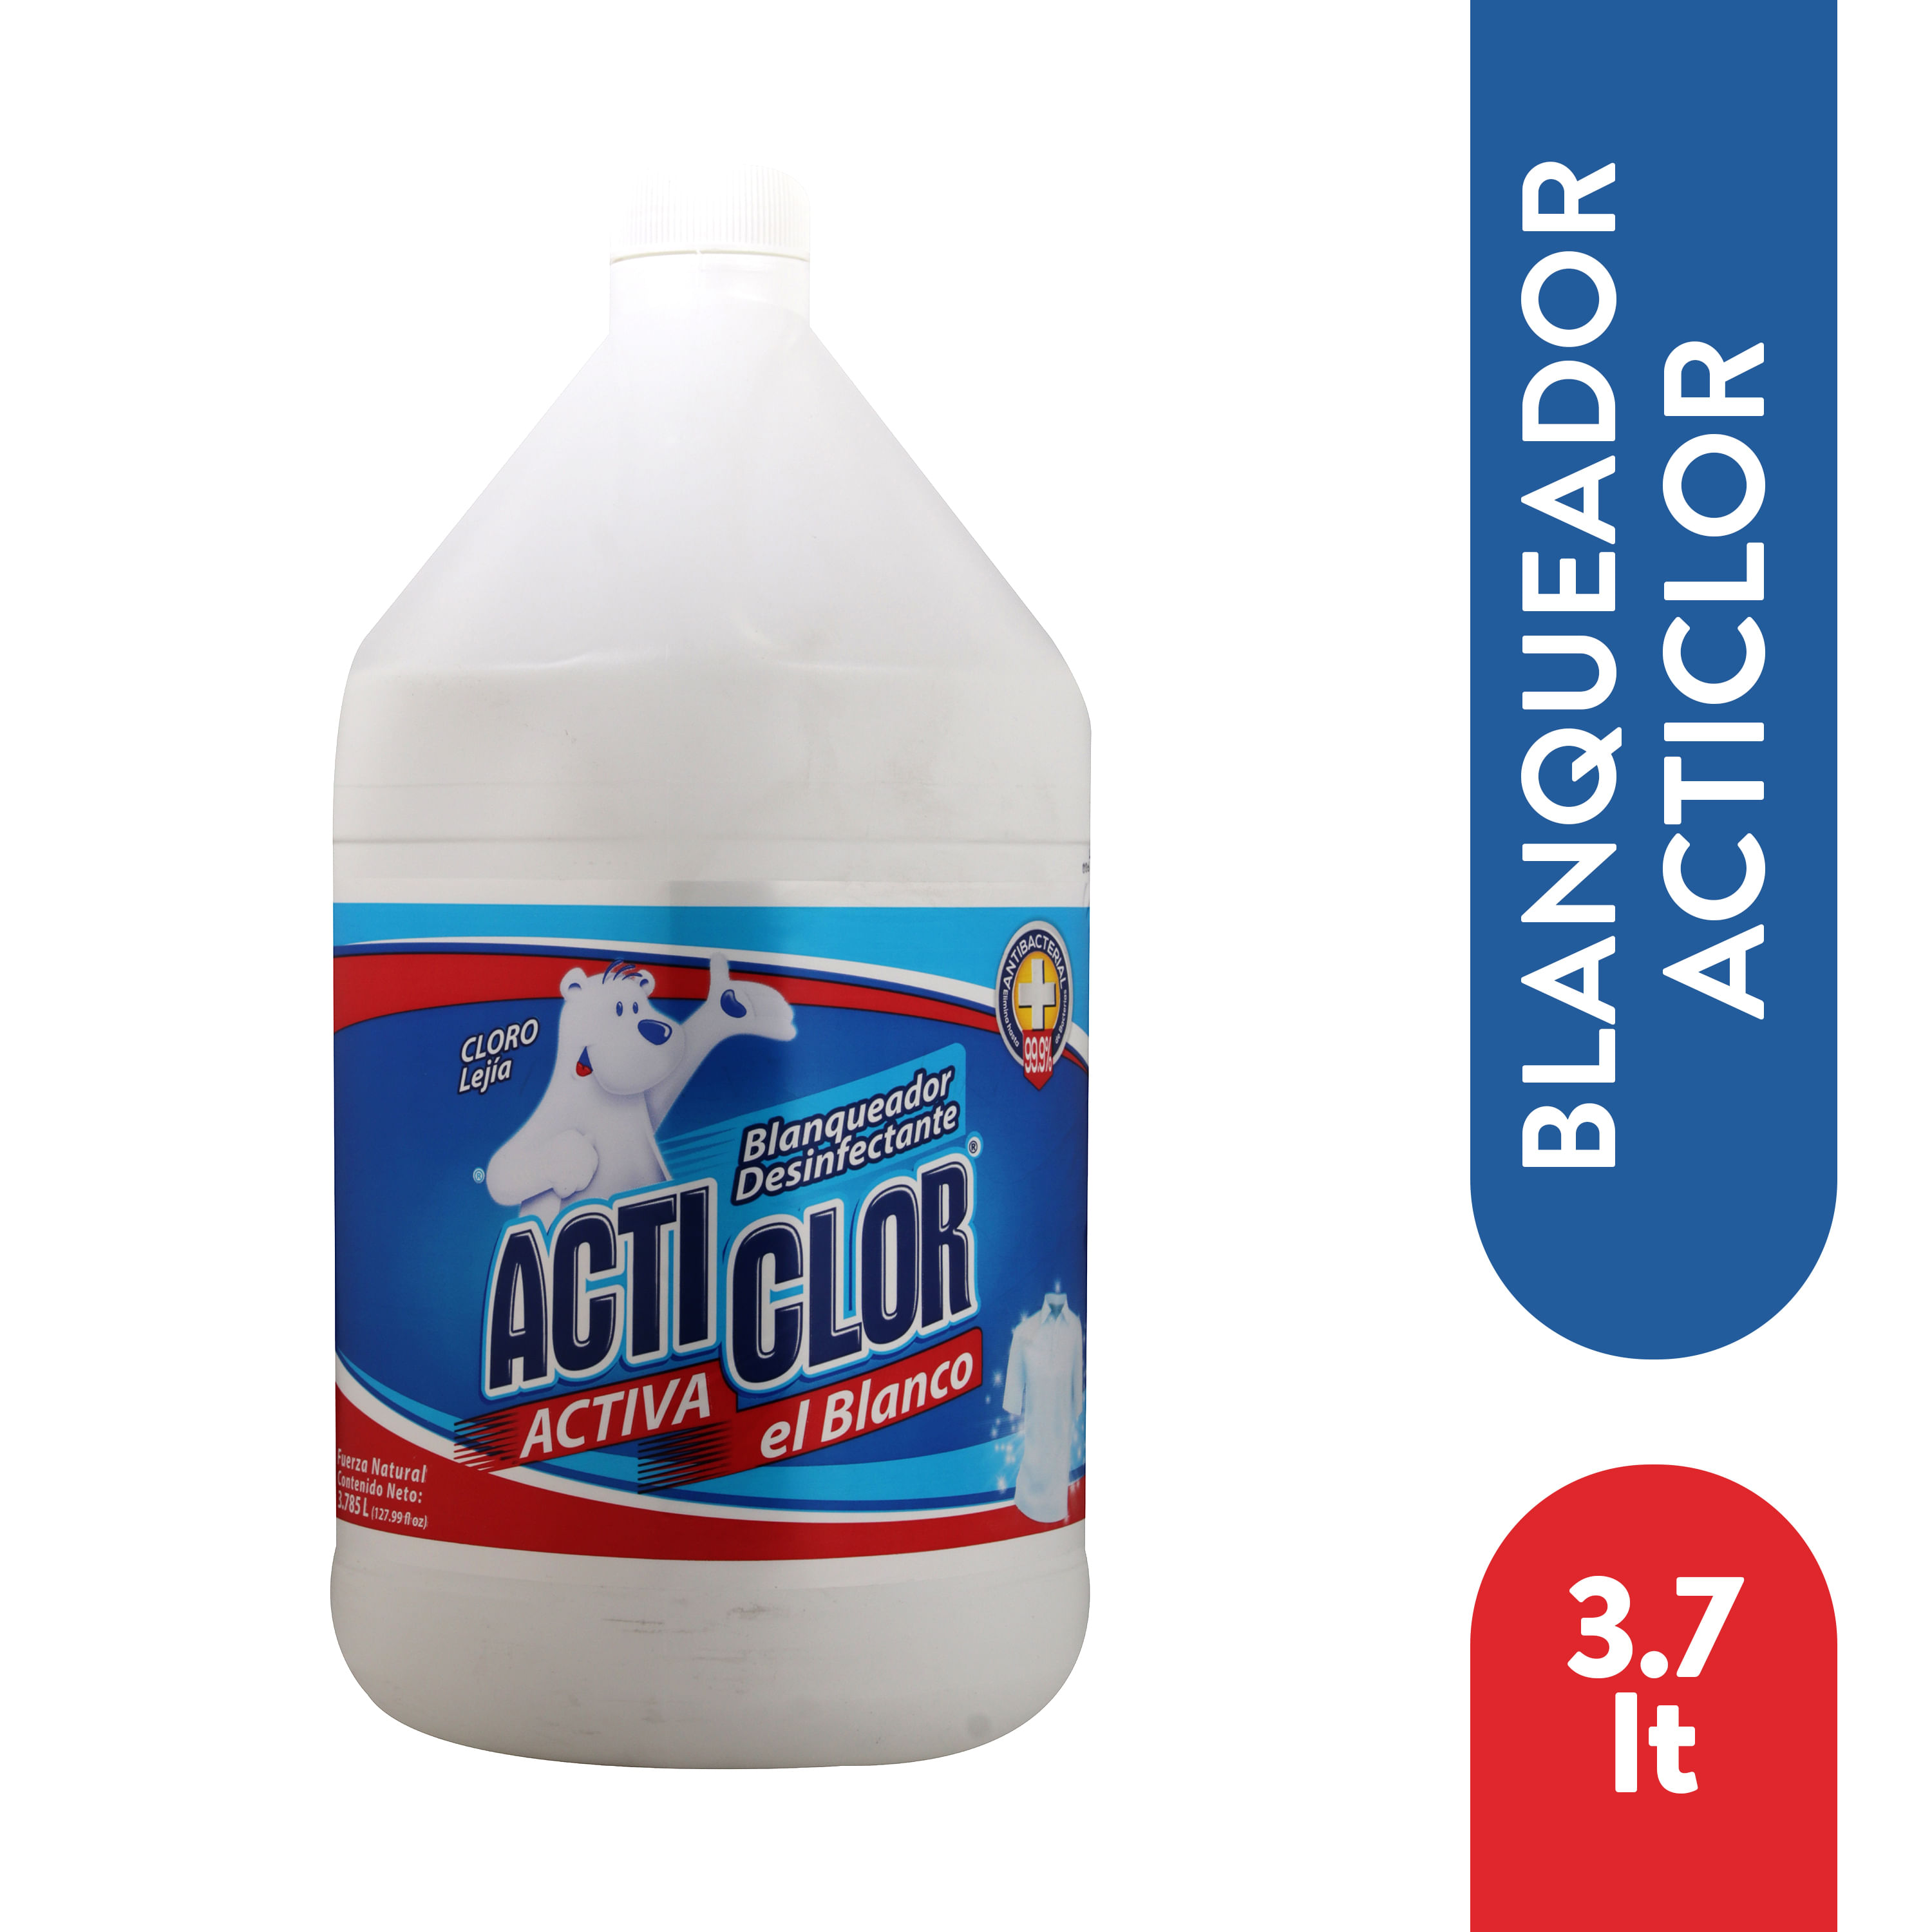 Cloro-Acticlor-Original-3785-Ml-1-6100